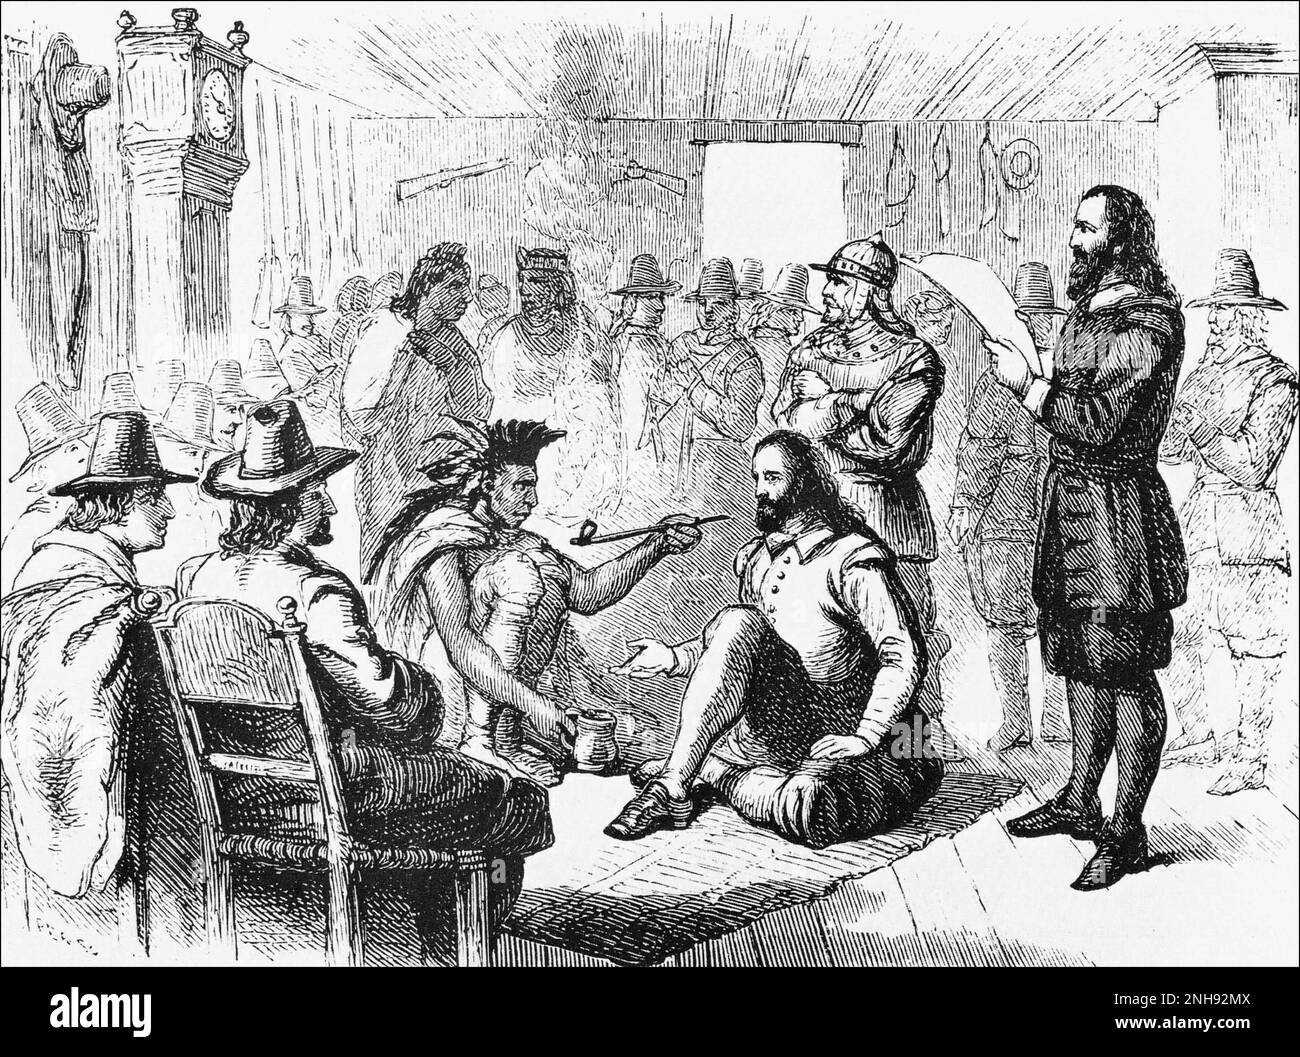 Le dirigeant de Wampanoag, Massasoit (c.1581-1661), fume un tuyau de paix avec le gouverneur de Plymouth, John Carver, après avoir signé un traité en 1621. Gravure d'avant 1898. Banque D'Images